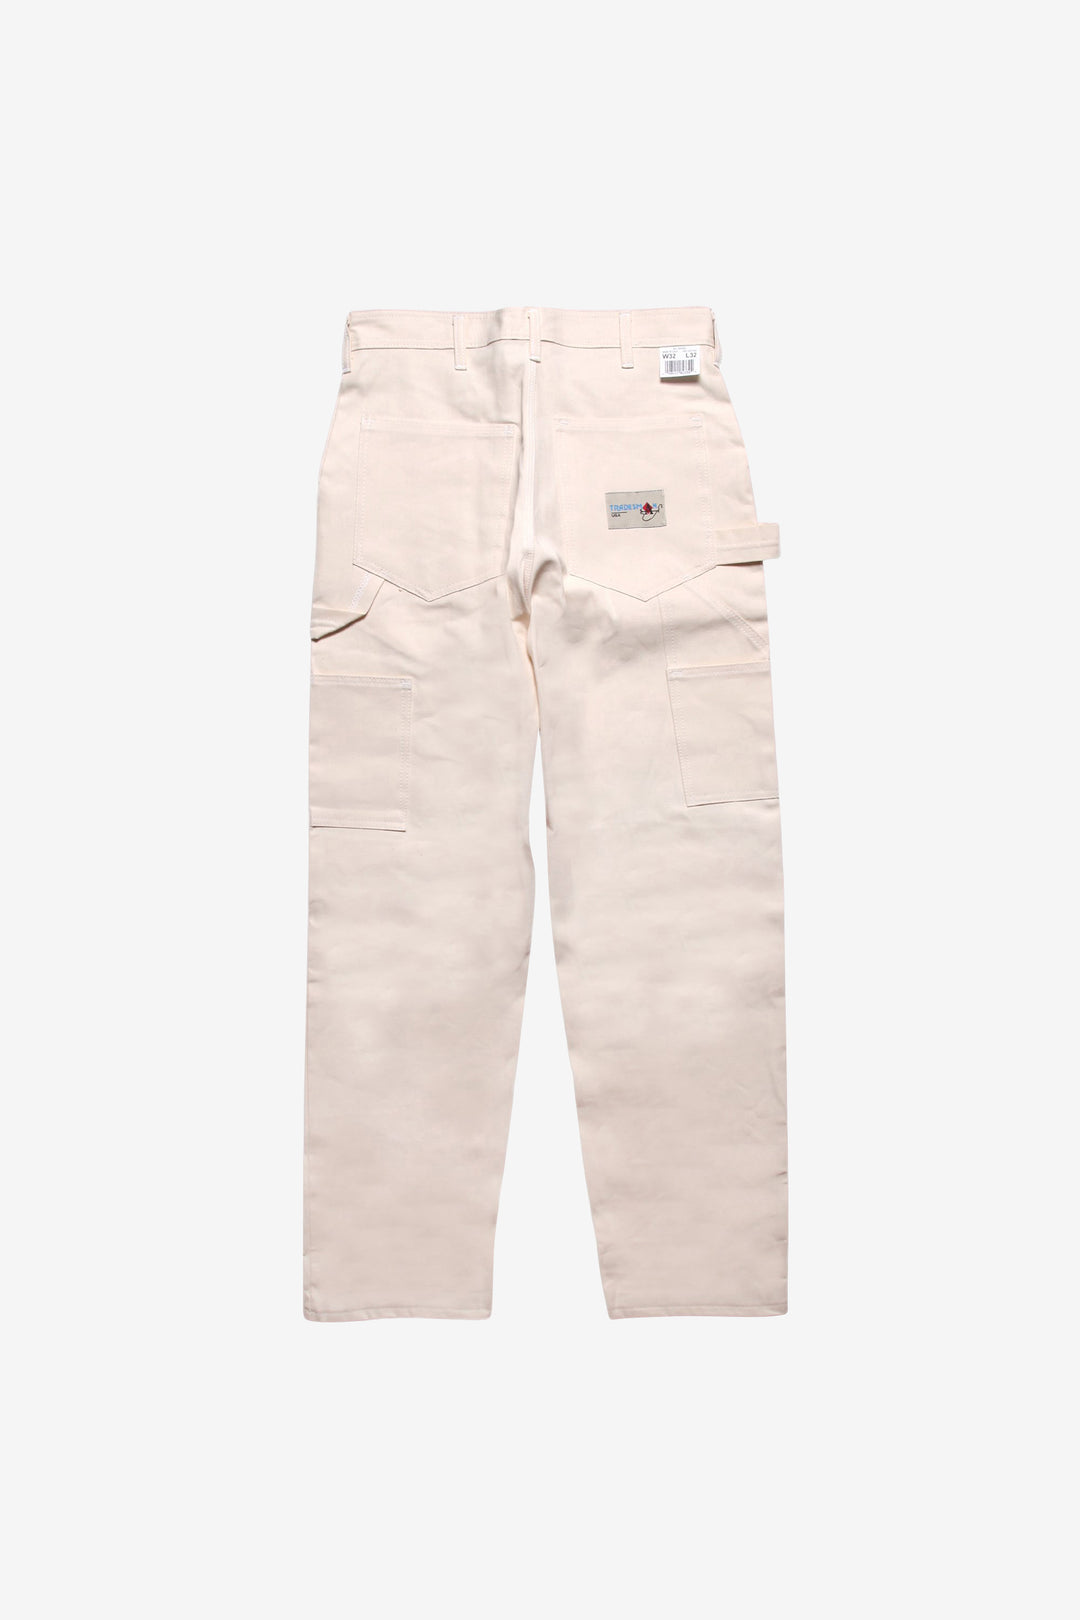 Ace Drop Cloth Tradesman Carpenter Pants - Natural